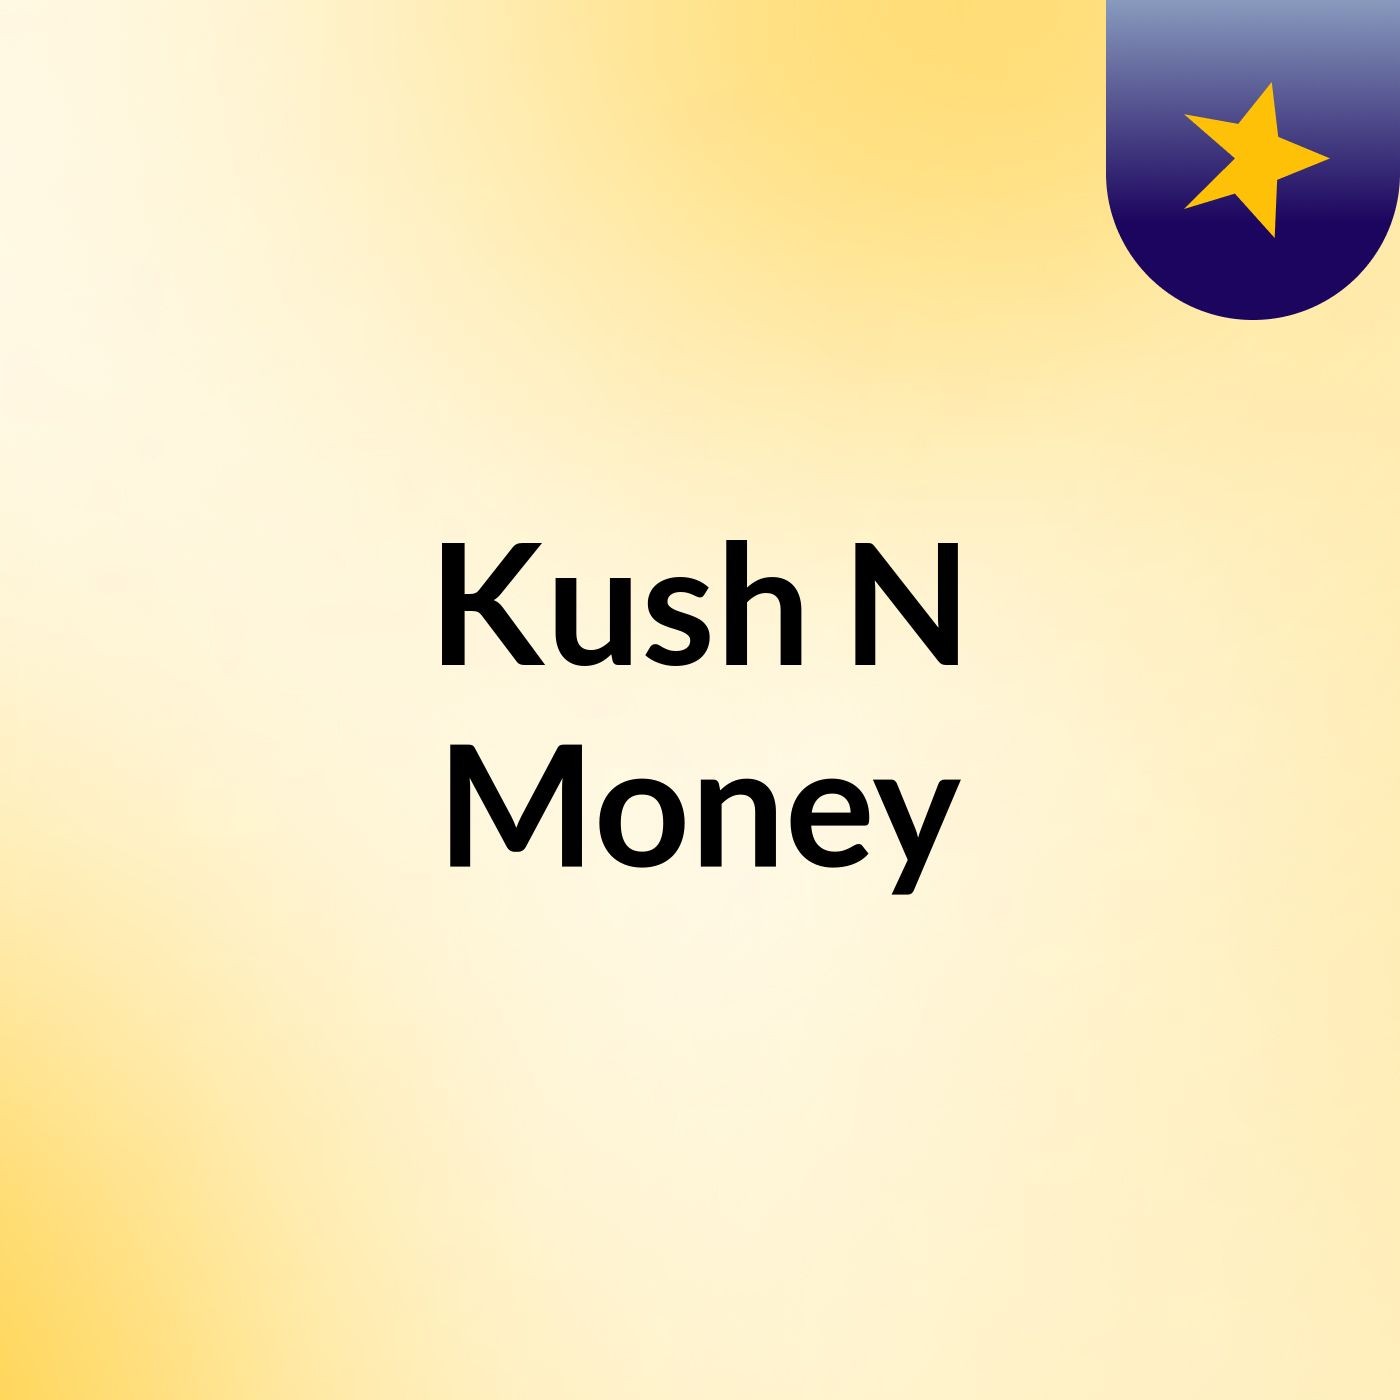 Kush N Money